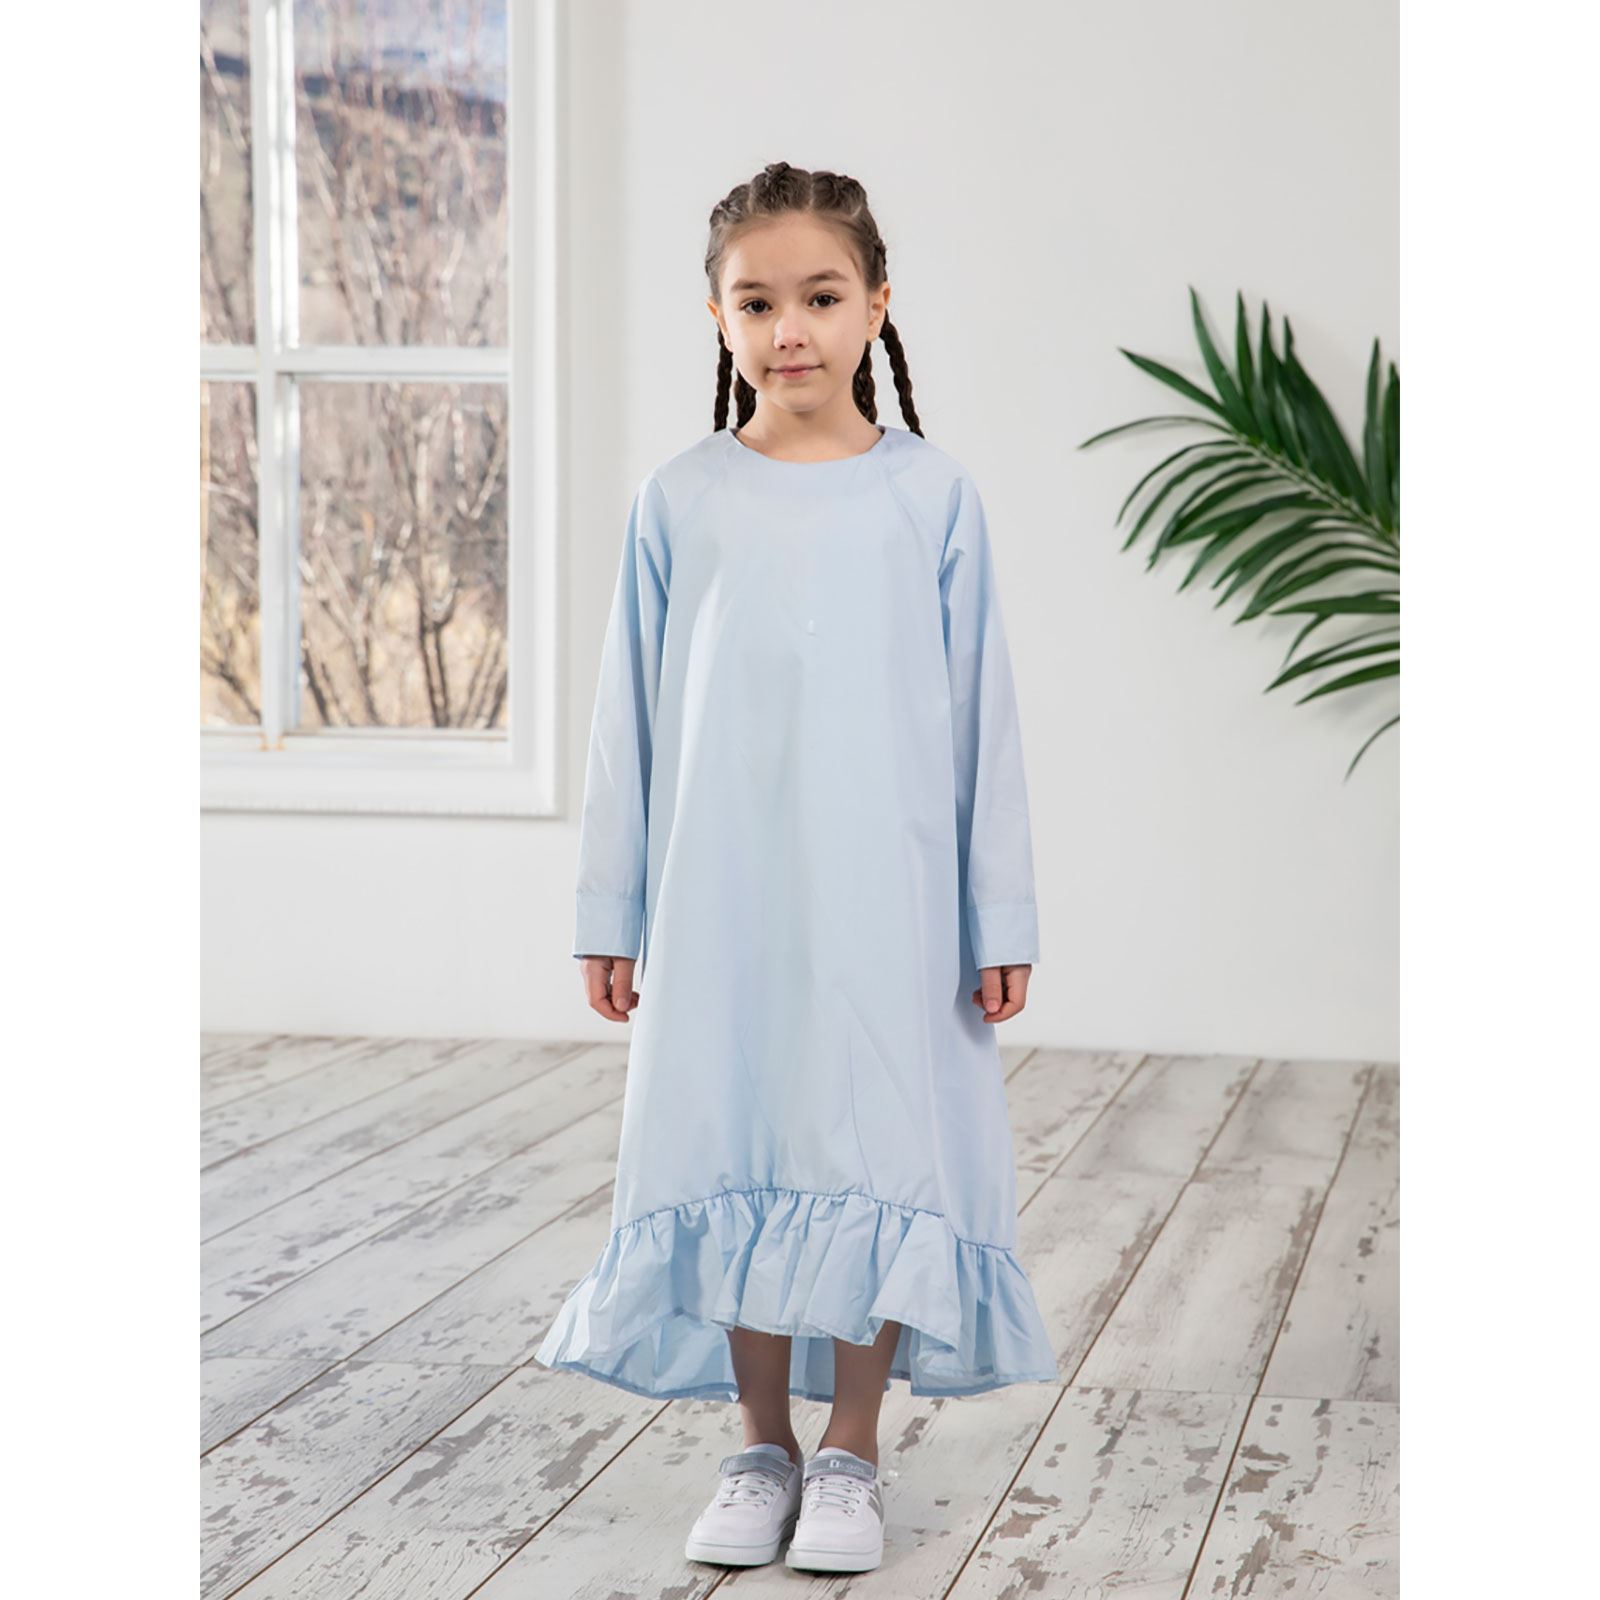 Burqa Bala Kız Çocuk Nur Kız Elbise 6-12 Yaş Mavi